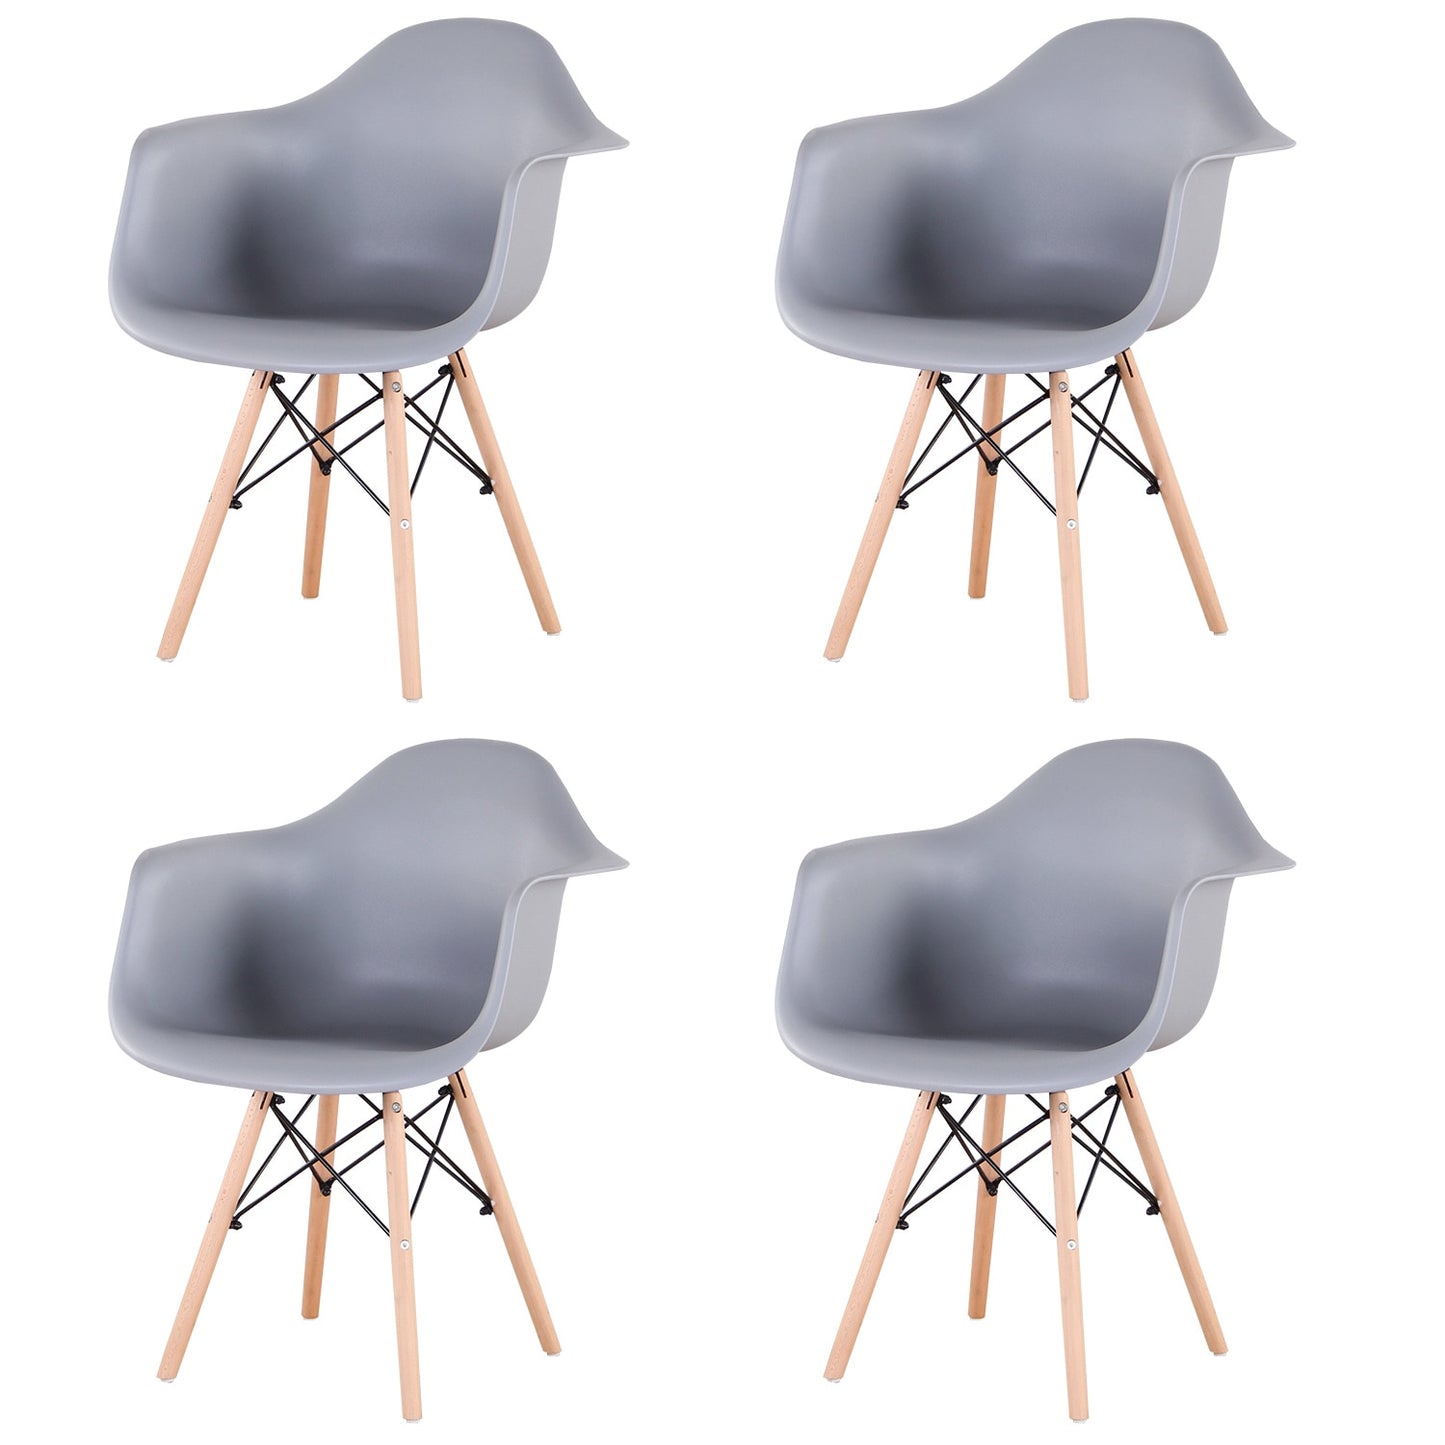 Ensemble de 4 chaises NORDIC Design